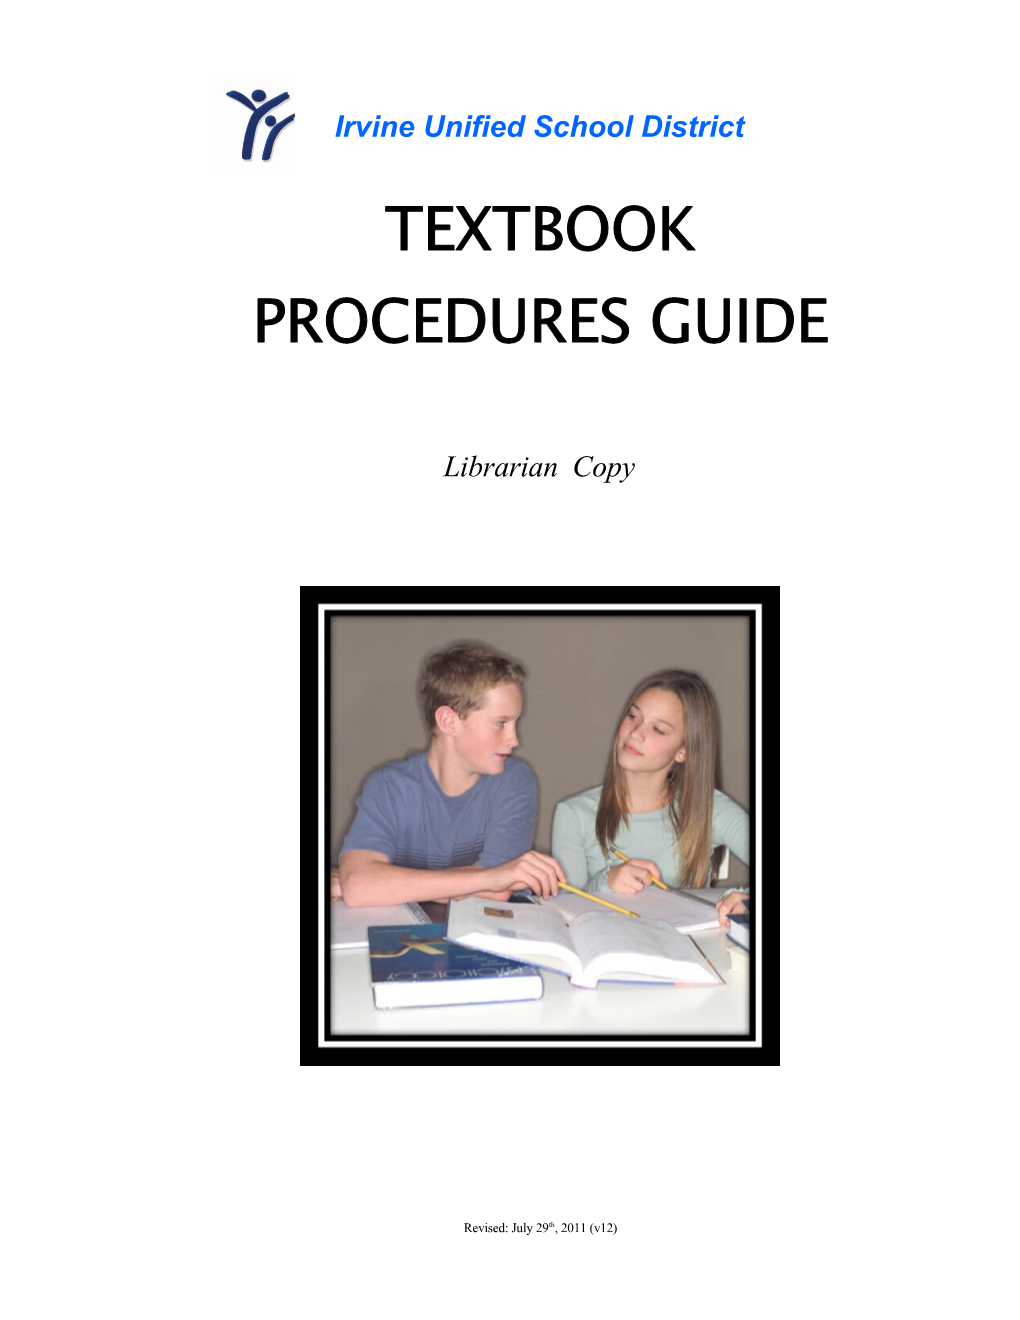 Textbook Procedures Manual